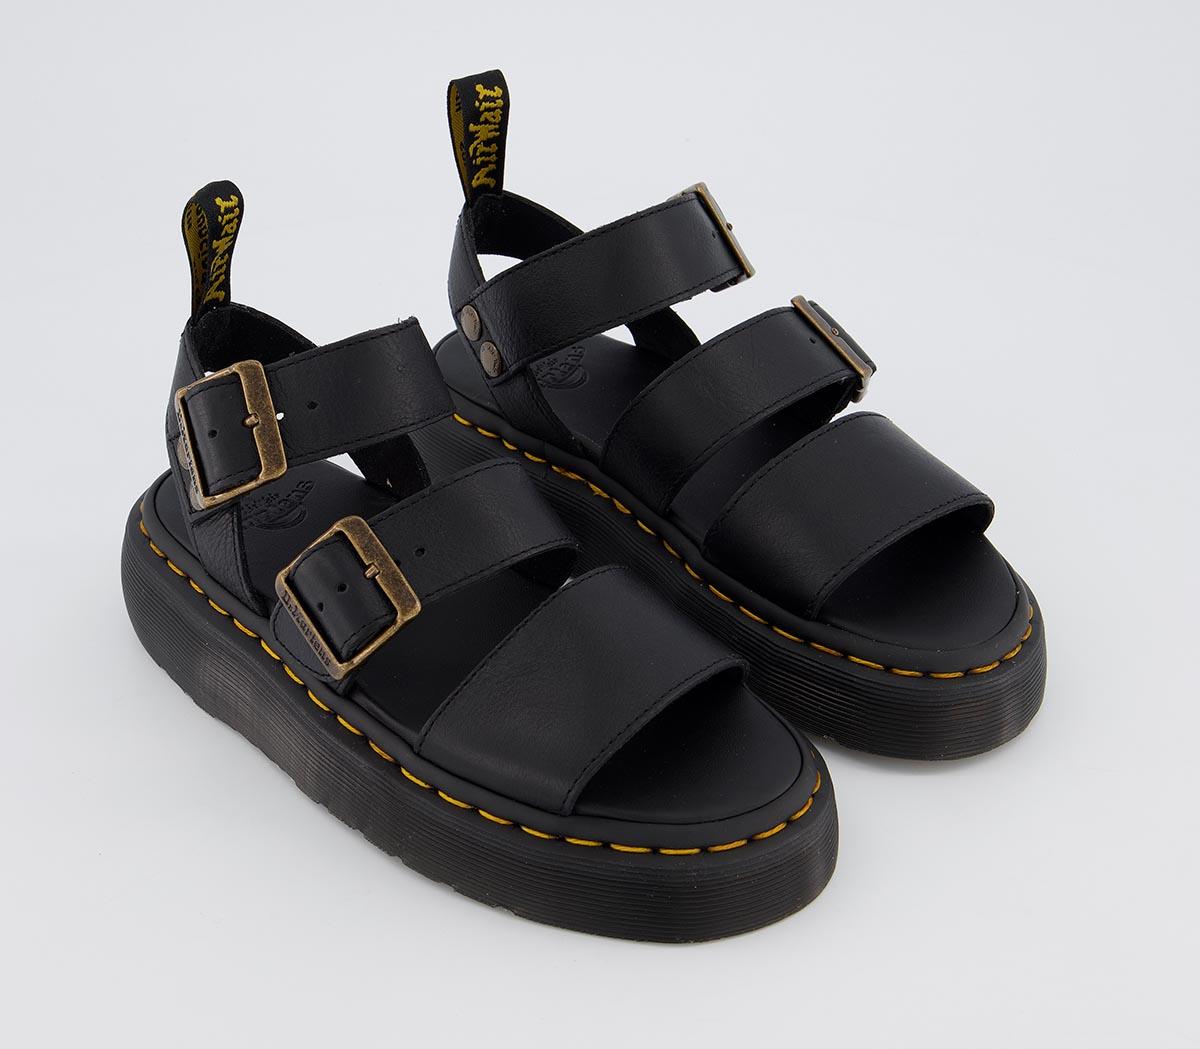 Dr. Martens Gryphon Quad Sandals Black - Women’s Sandals